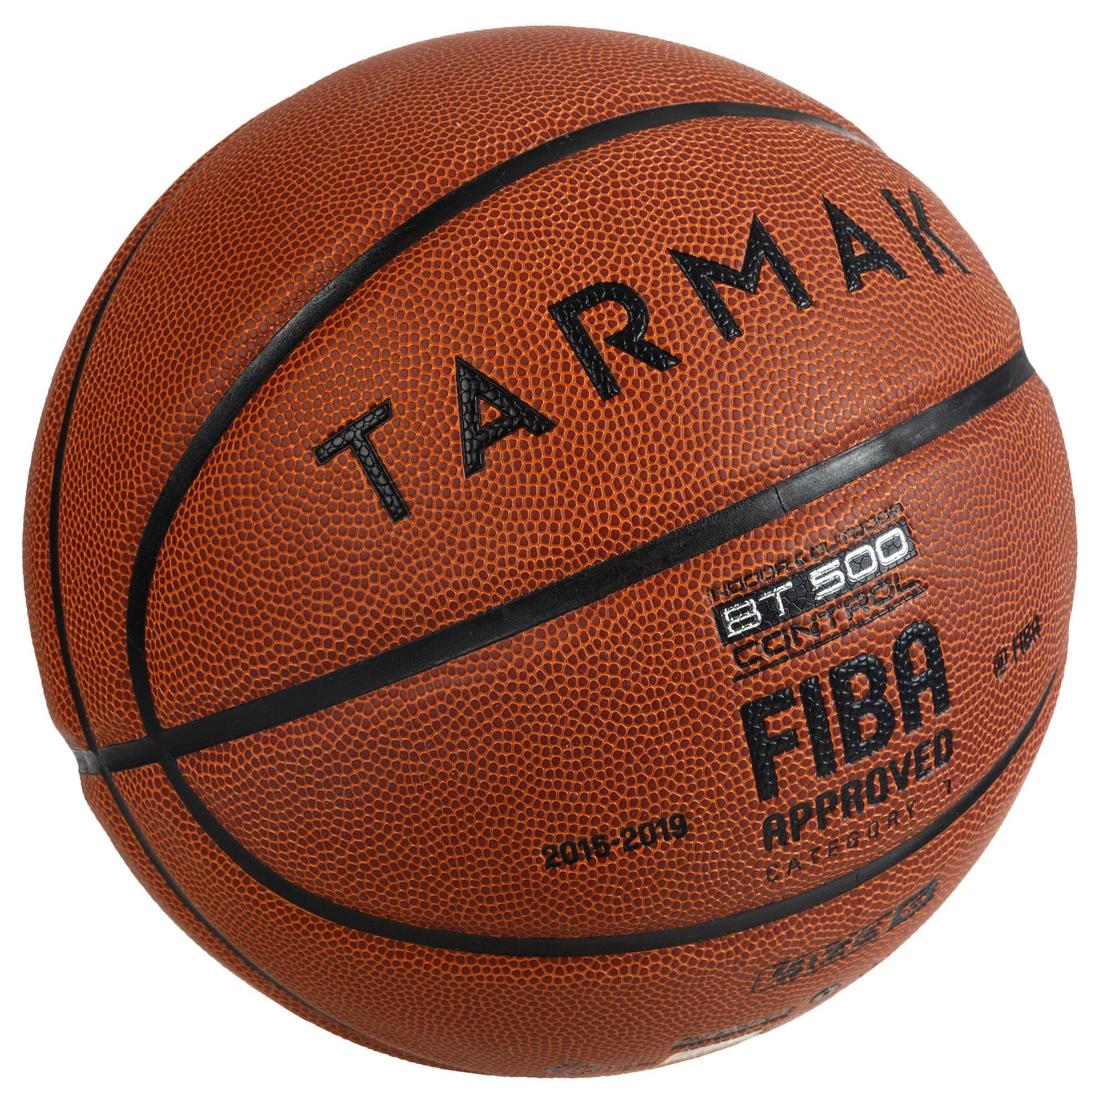 TARMAK(ターマック) バスケットボール BT500 7号 FIBA公認球